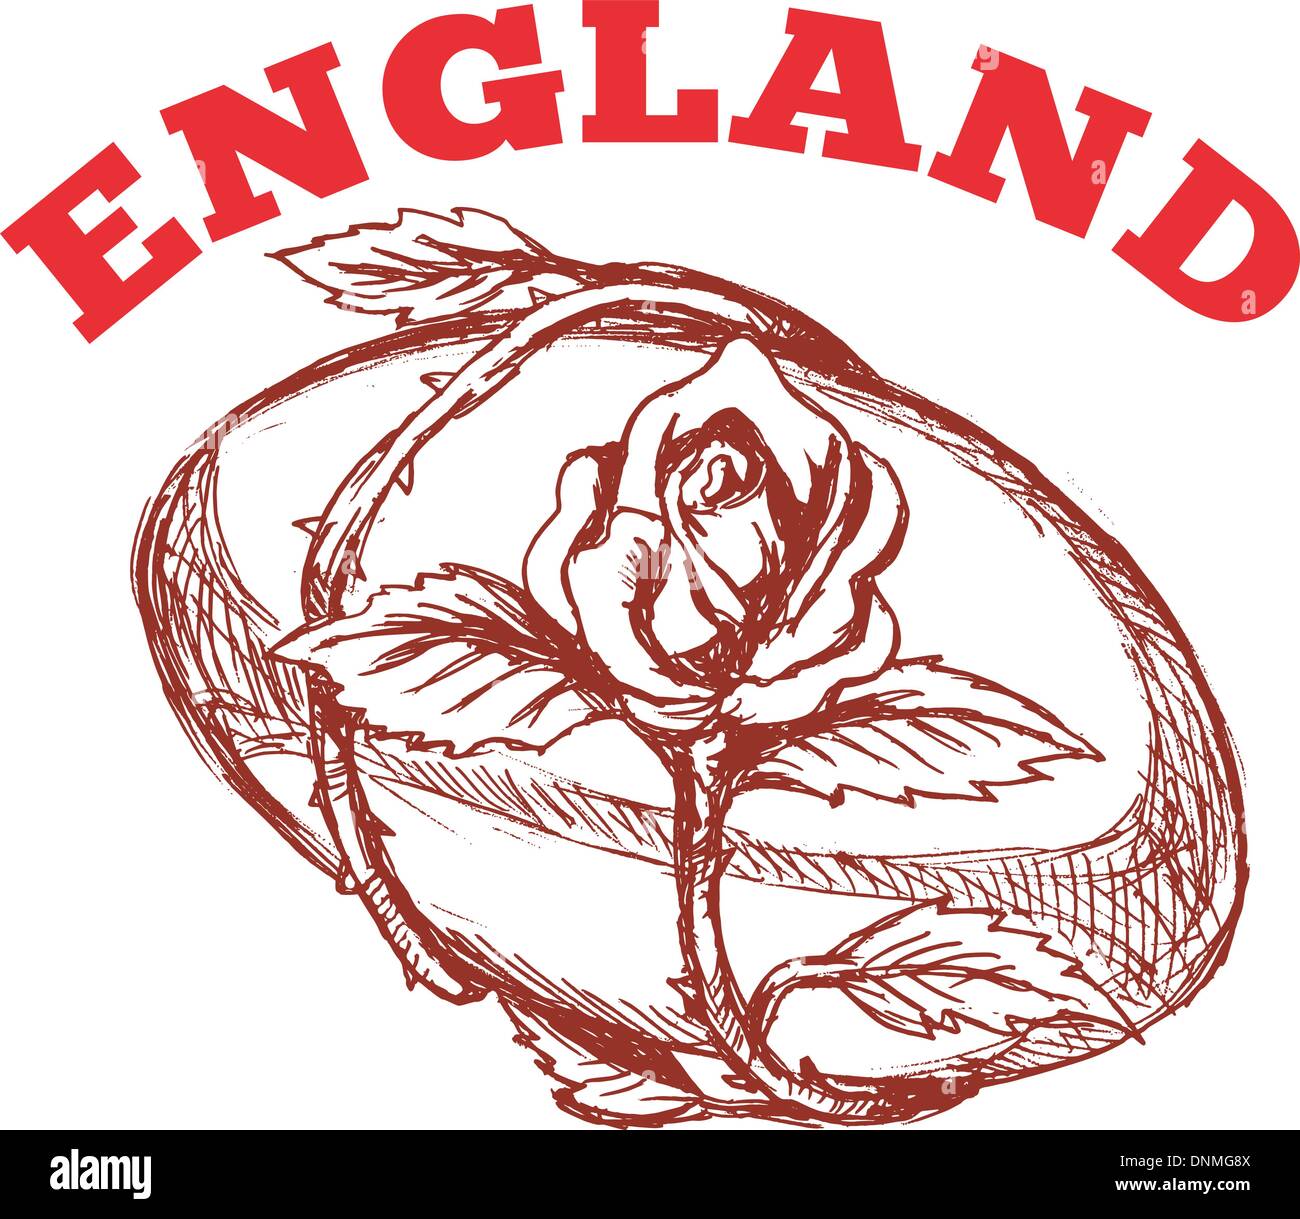 Hand skizzierte Zeichnung Illustration des Rugby-Ball mit rose Blume Ranke umschlungen auf isolierte Hintergrund mit Worten "England" Stock Vektor